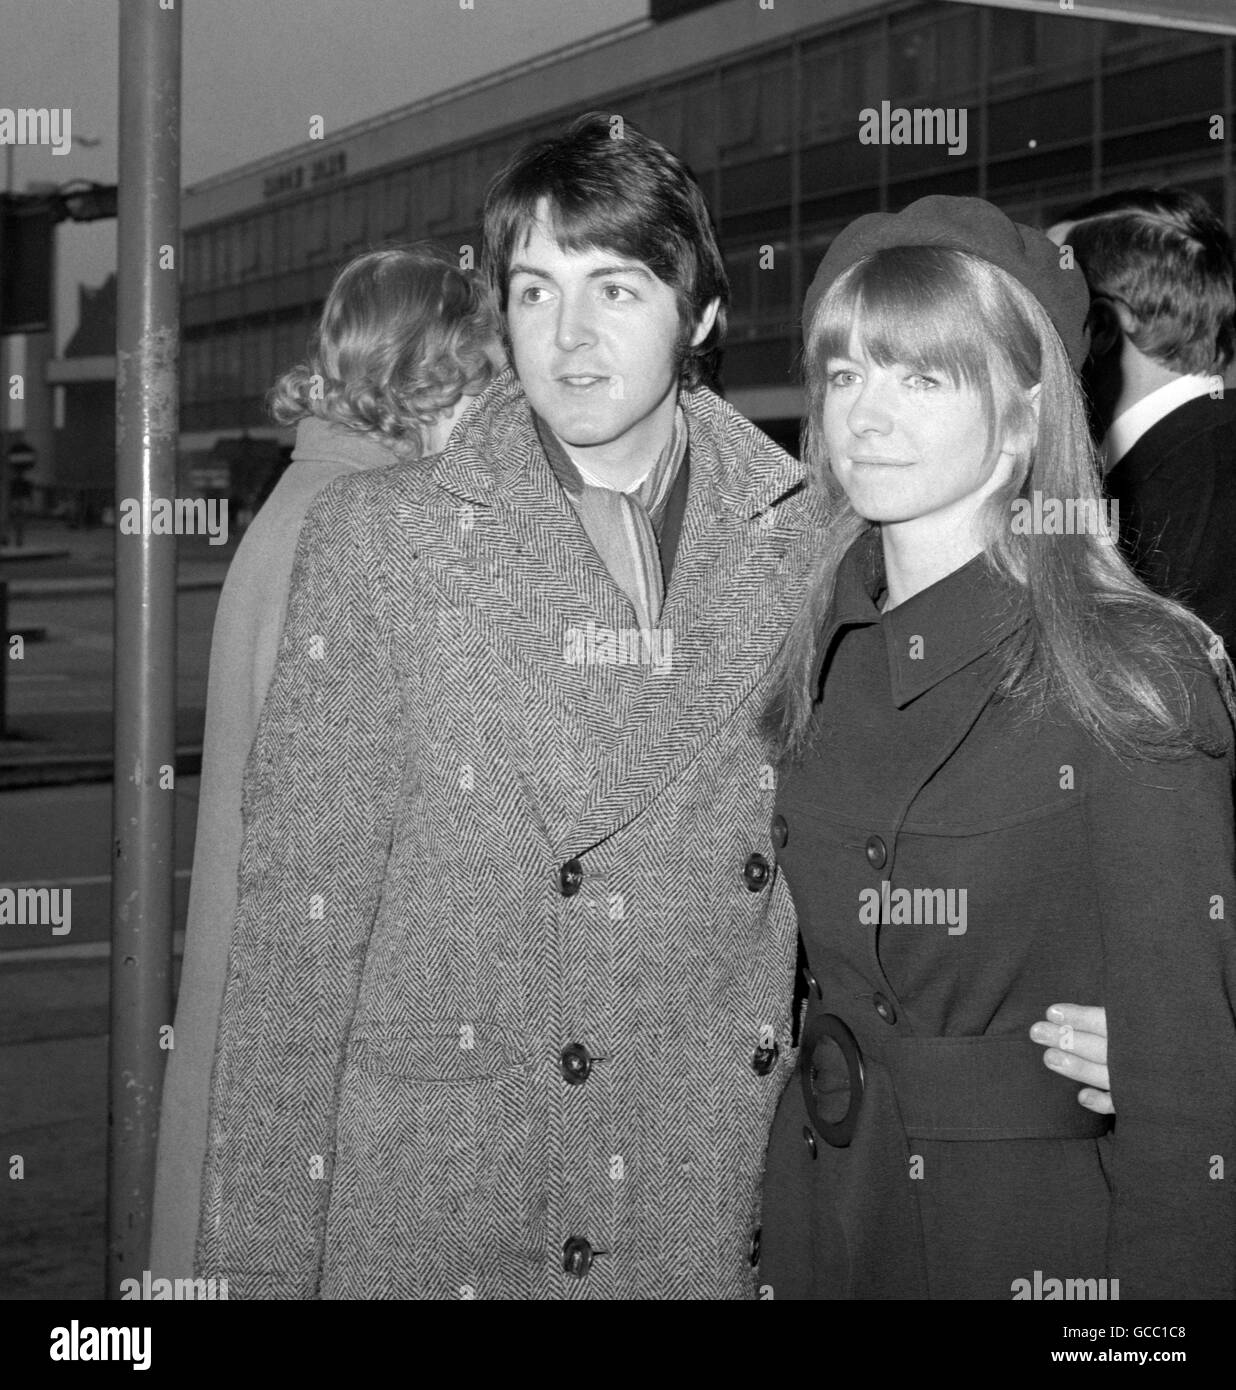 Paul McCartney, des Beatles, avec sa petite amie Jane Asher à l'aéroport de Heathrow quand ils sont partis pour l'Inde. Ils sont en route vers l'académie du Maharishi Mahesh Yogi sur un cours de méditation transcendantale. Banque D'Images